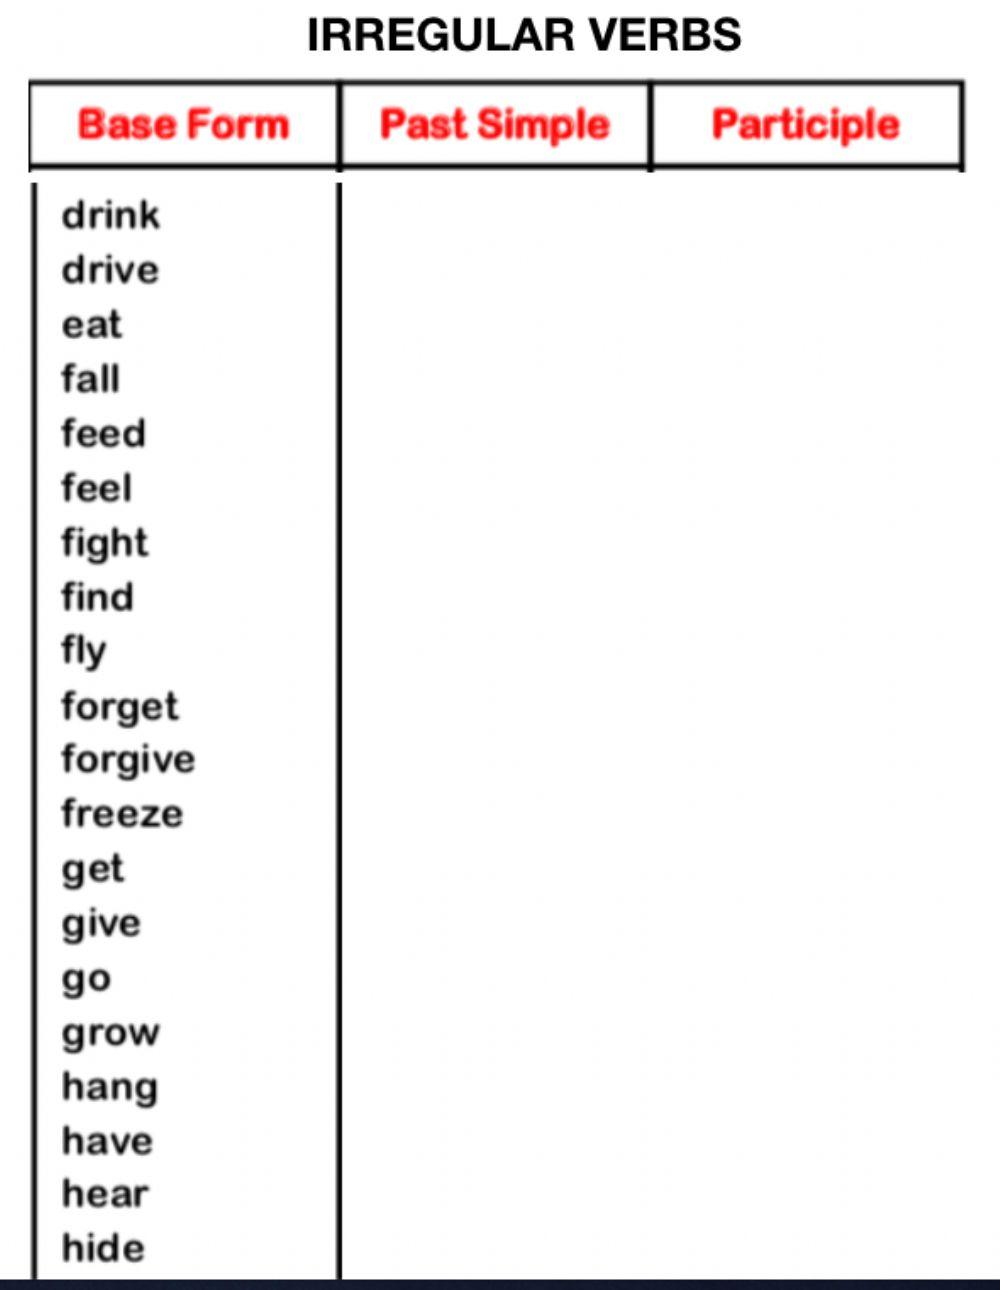 Irregular verbs 21-40